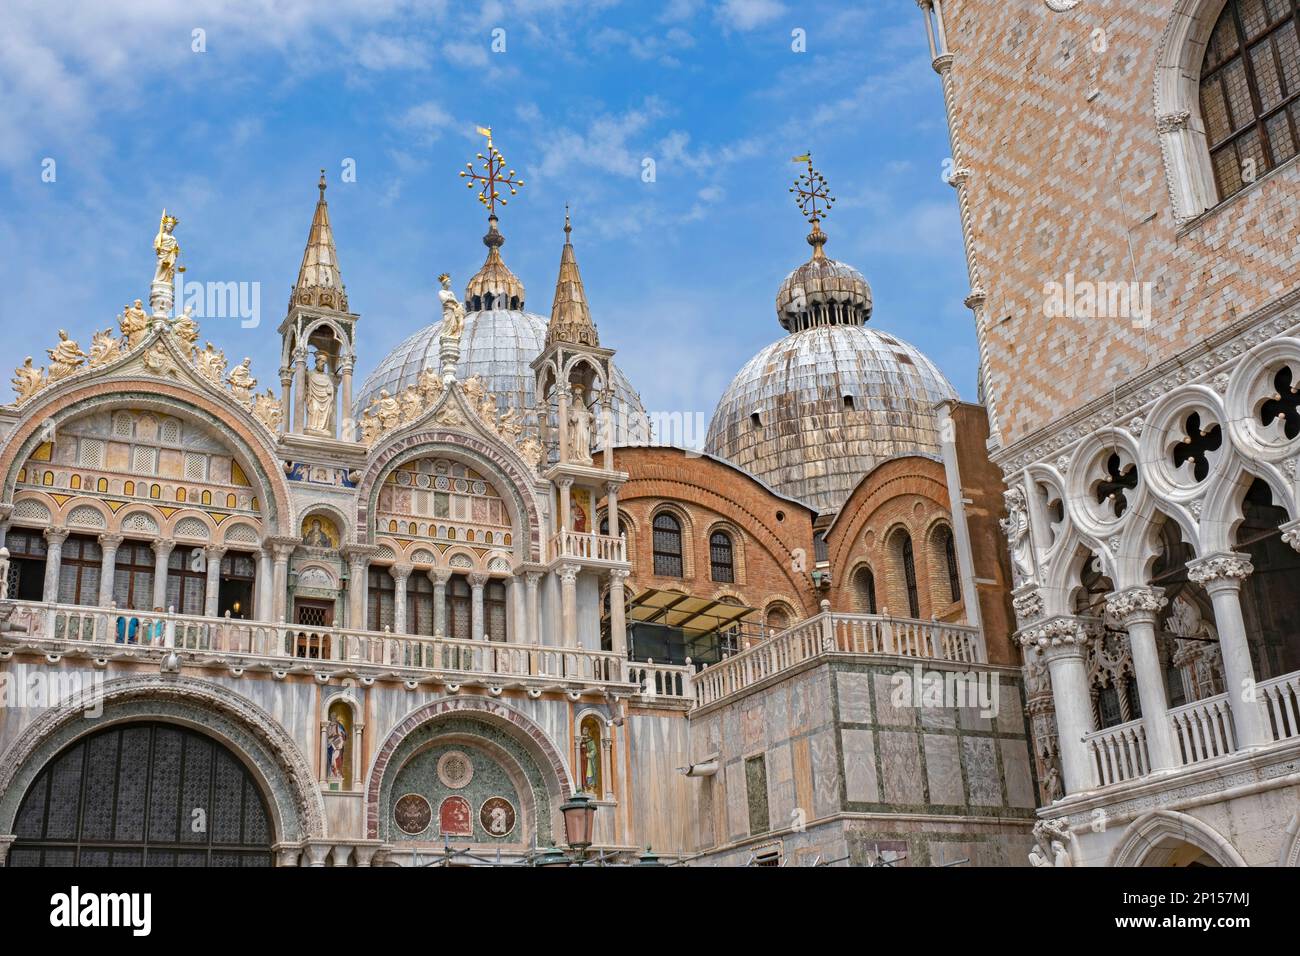 Basílica de San Marcos / Basílica de San Marcos, iglesia de la catedral en la Piazza San Marco en la ciudad de Venecia, Veneto, norte de Italia Foto de stock